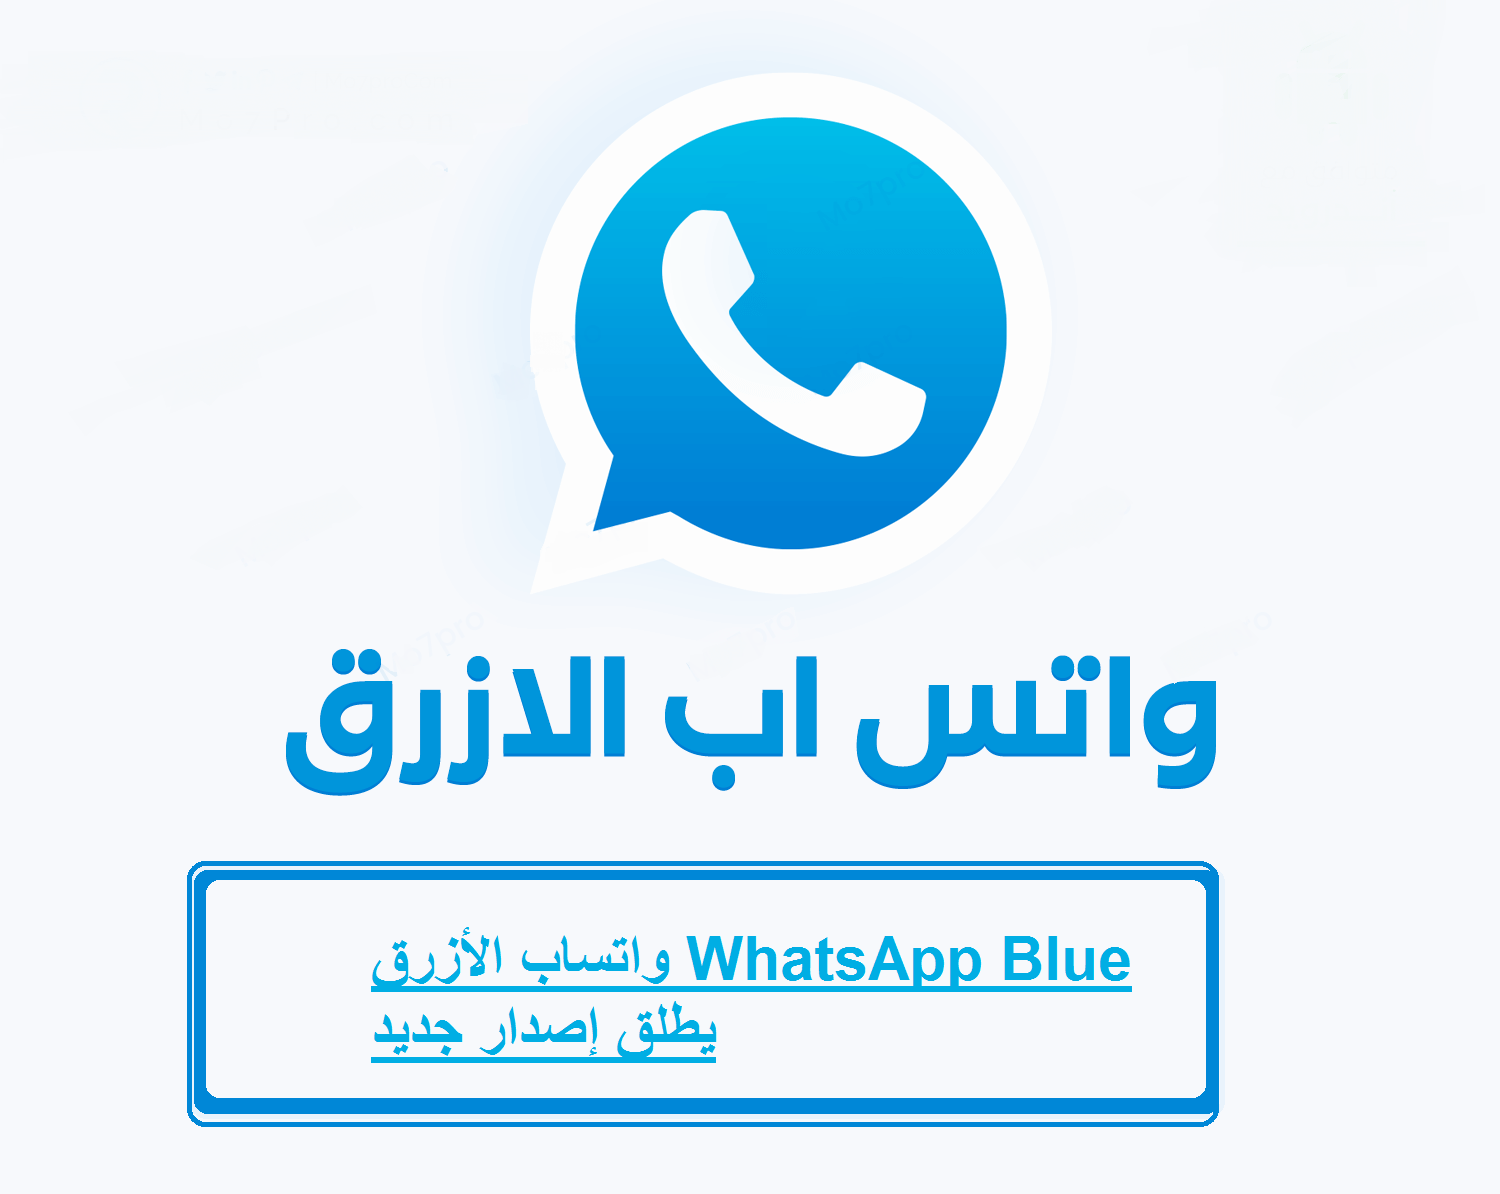 واتساب الأزرق WhatsApp Blue يطلق إصدار جديد ومميزات جديدة بالخطوات